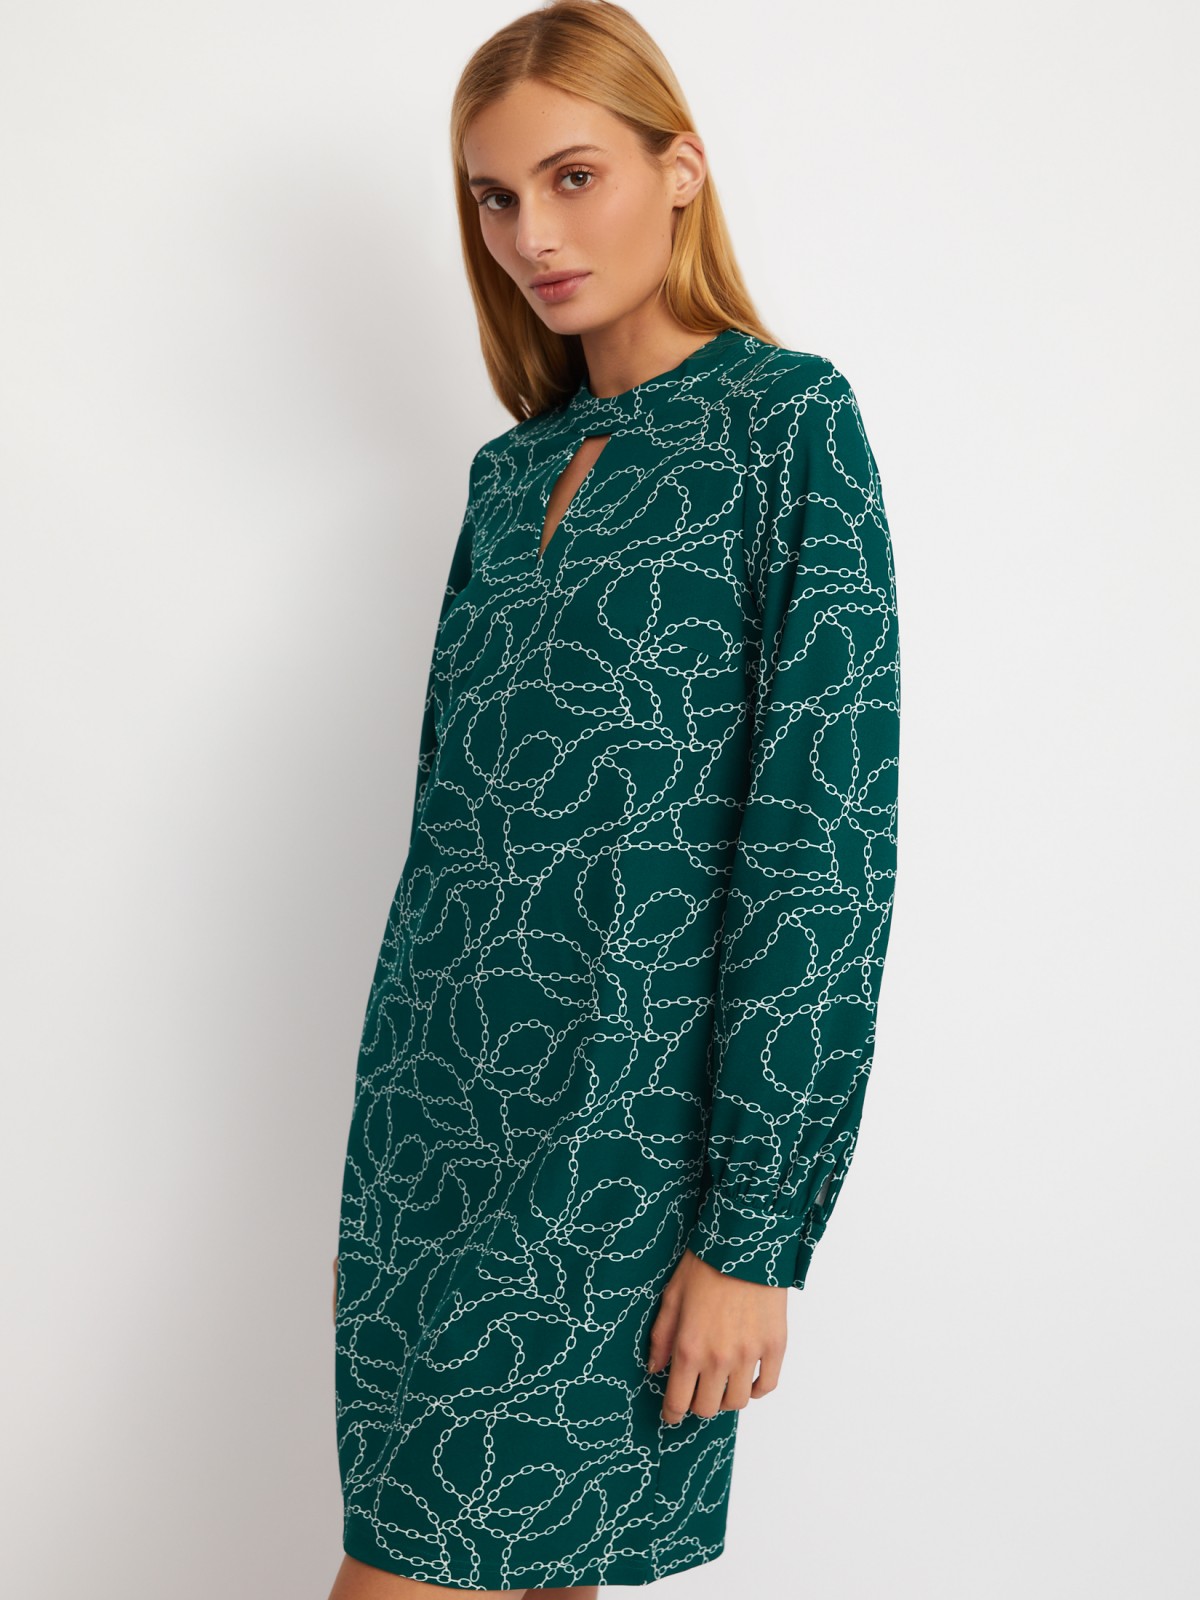 Платье длины мини с чокером и с принтом zolla 024118135203, цвет темно-зеленый, размер S - фото 5